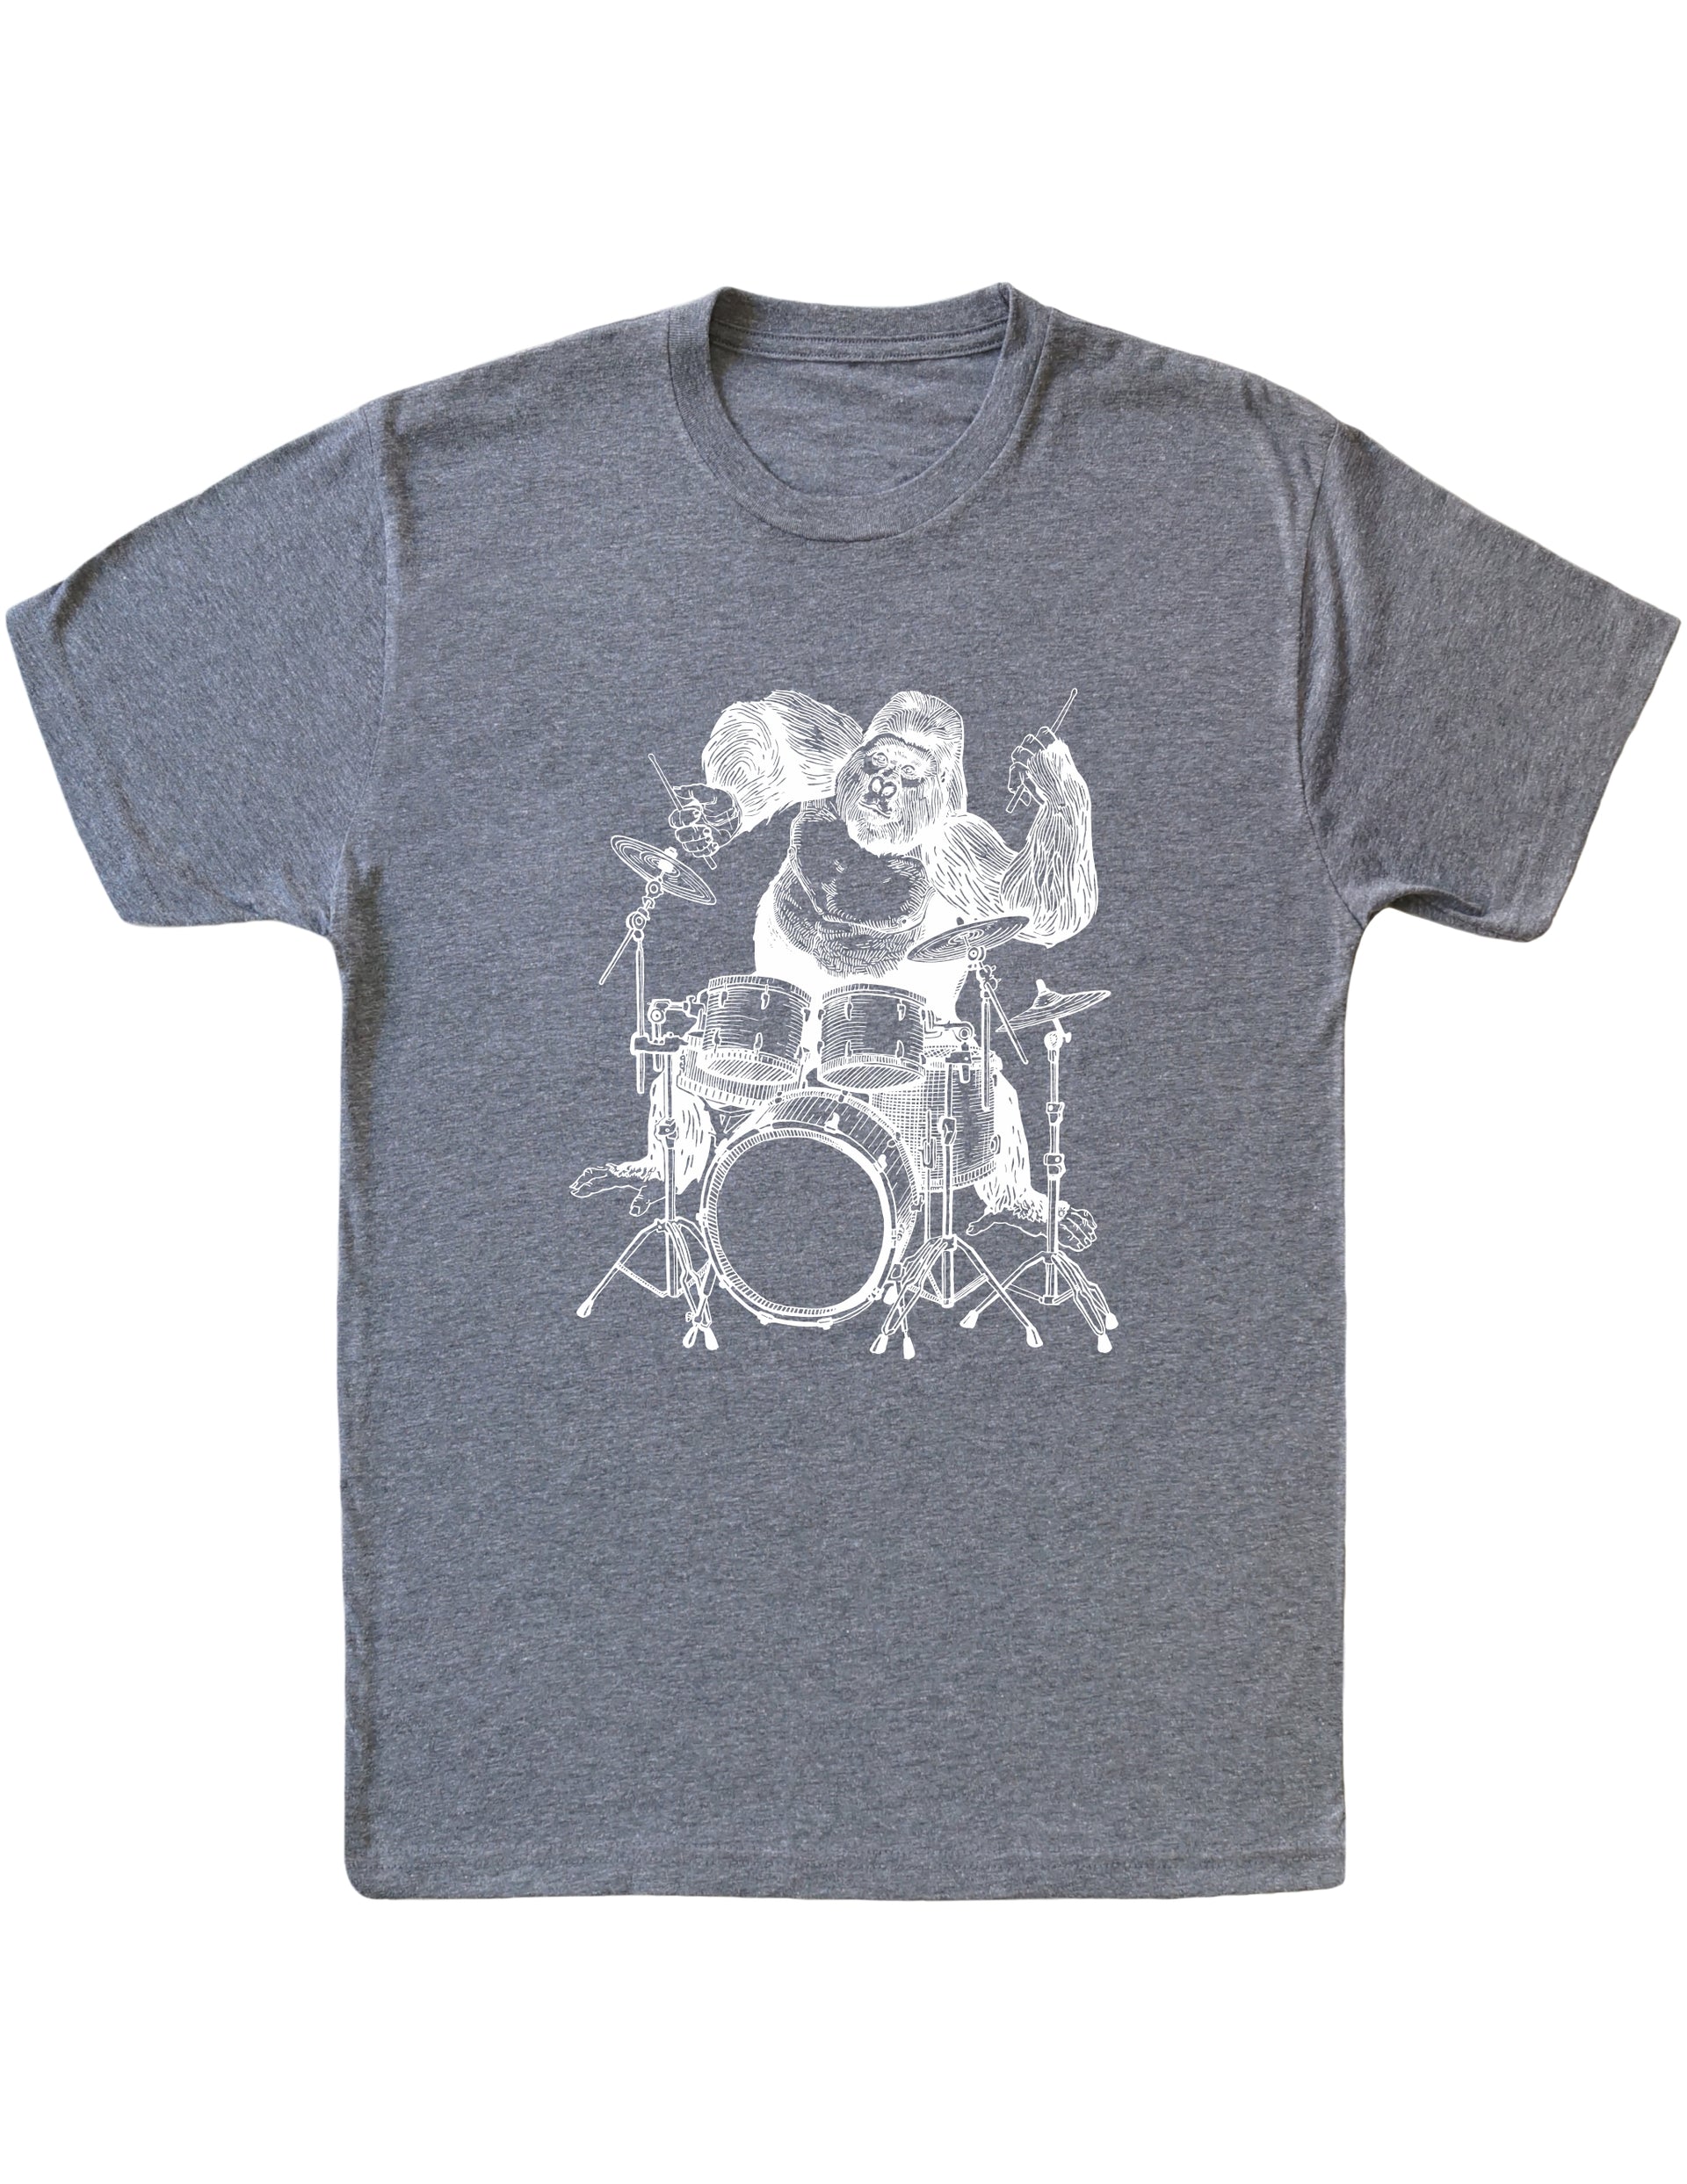 seembo-gorilla-animal-drummer-playing-drums-art-men-vintage-grey-t-shirt